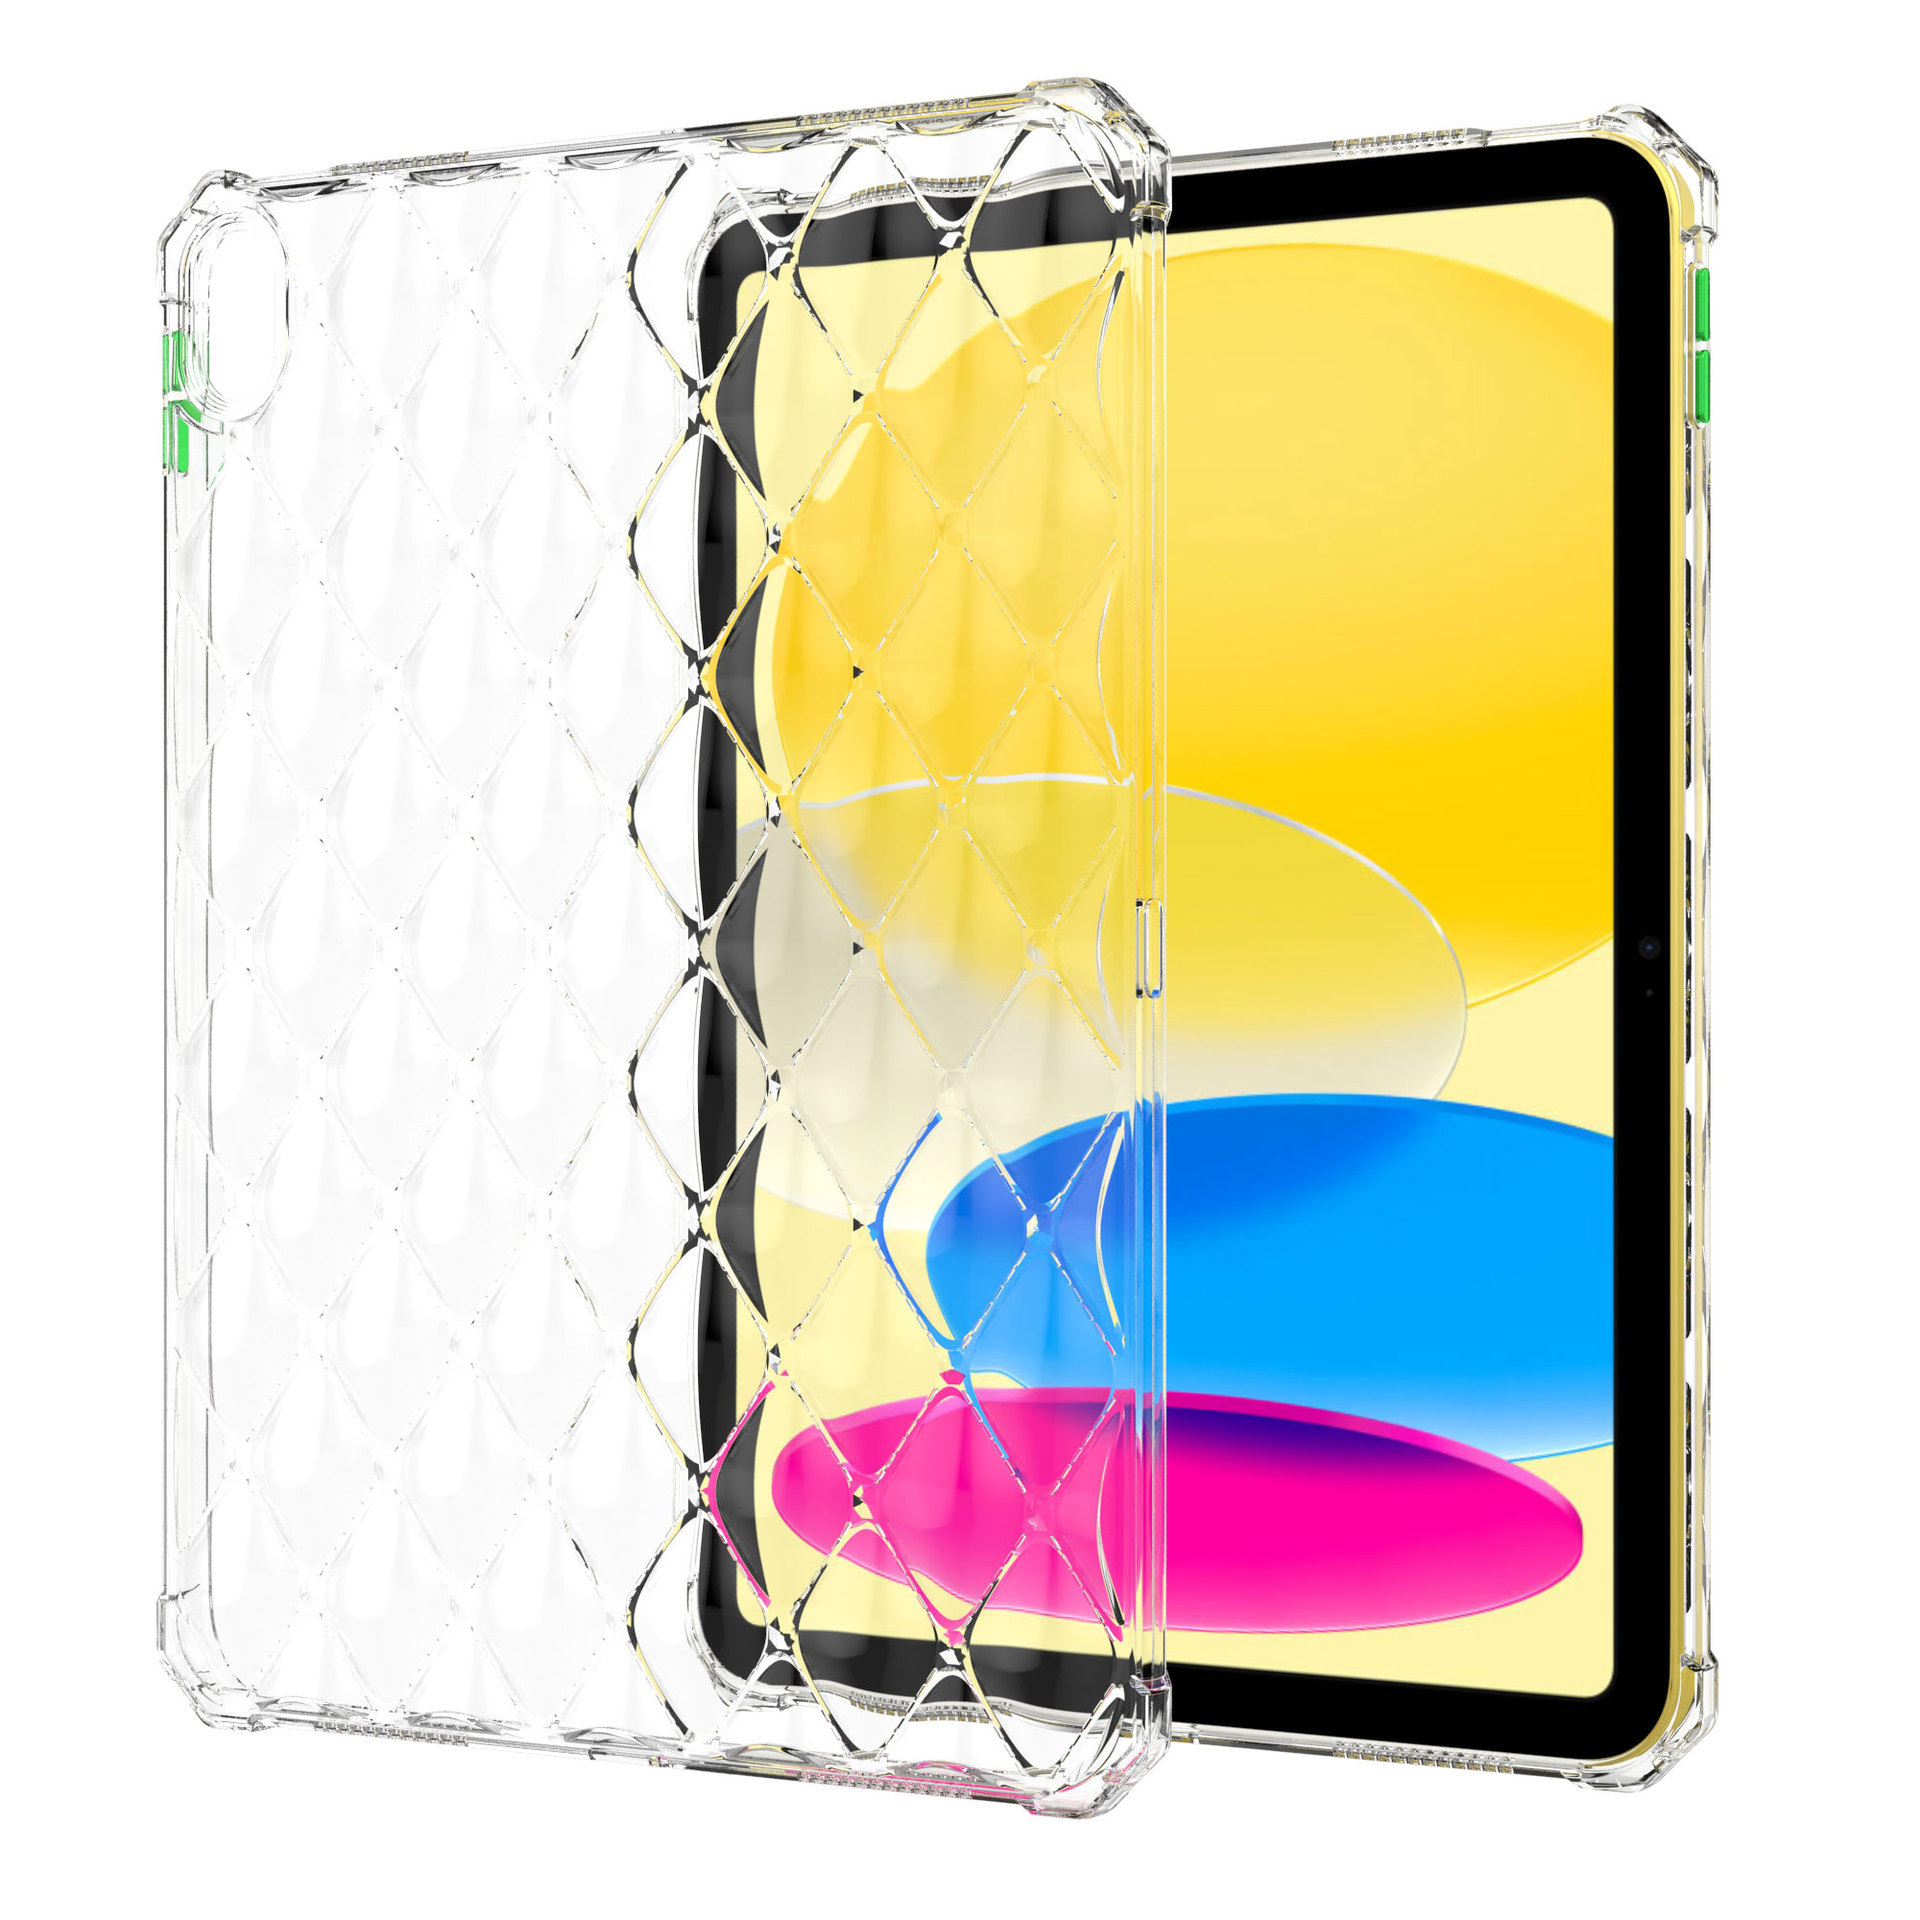 Hình ảnh Ốp lưng chống sốc đệm khí trong suốt cho iPad Pro 11 12.9 / Air 1 2 4 5 / Mini 4 5 6 / 10.2 / Pro 10.5 / 9.7 hiệu HOTCASE Diamond chống chịu va đập cực tốt, độ trong suốt chuẩn HD, mặt lưng 3D siêu đẹp - Hàng nhập khẩu